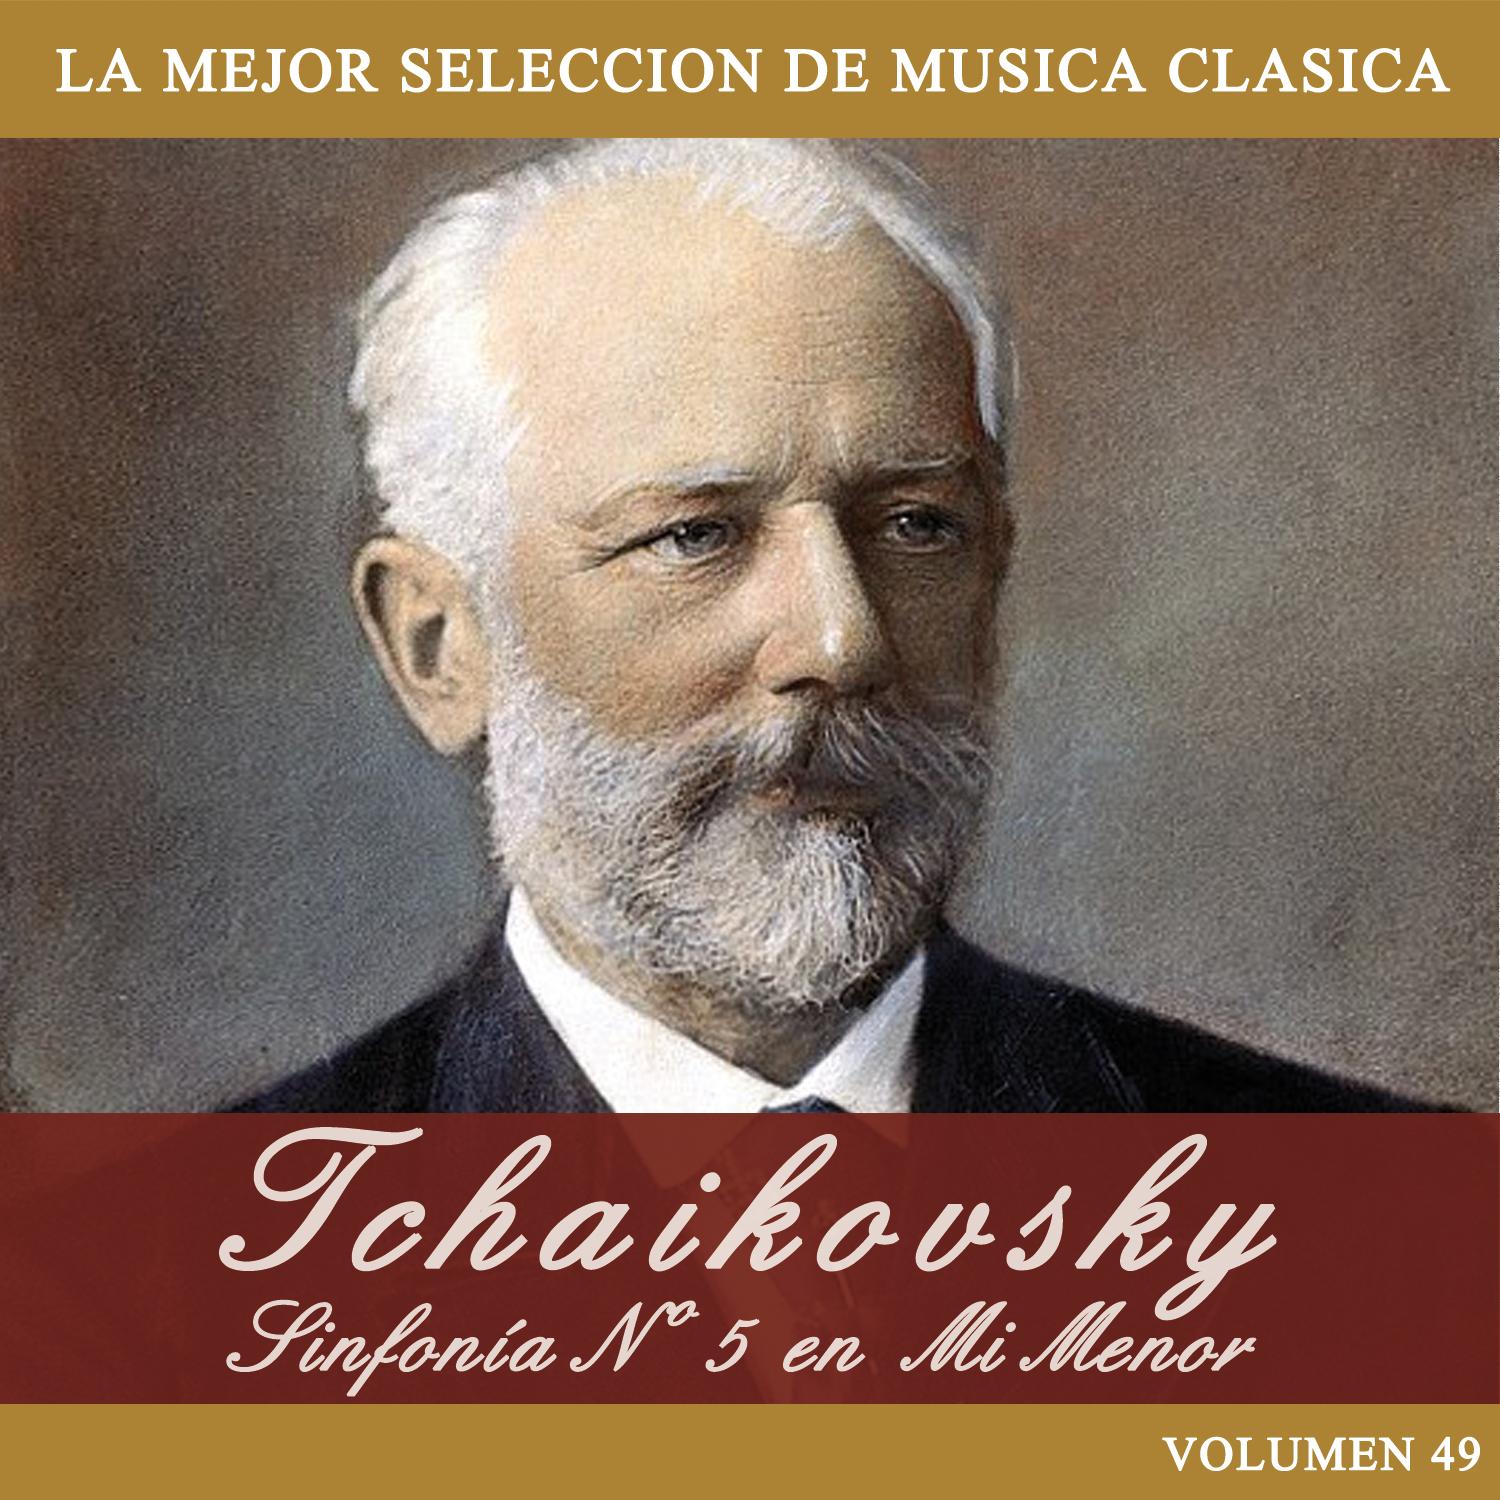 Tchaikovsky: Sinfoni a No. 5 en Mi Menor